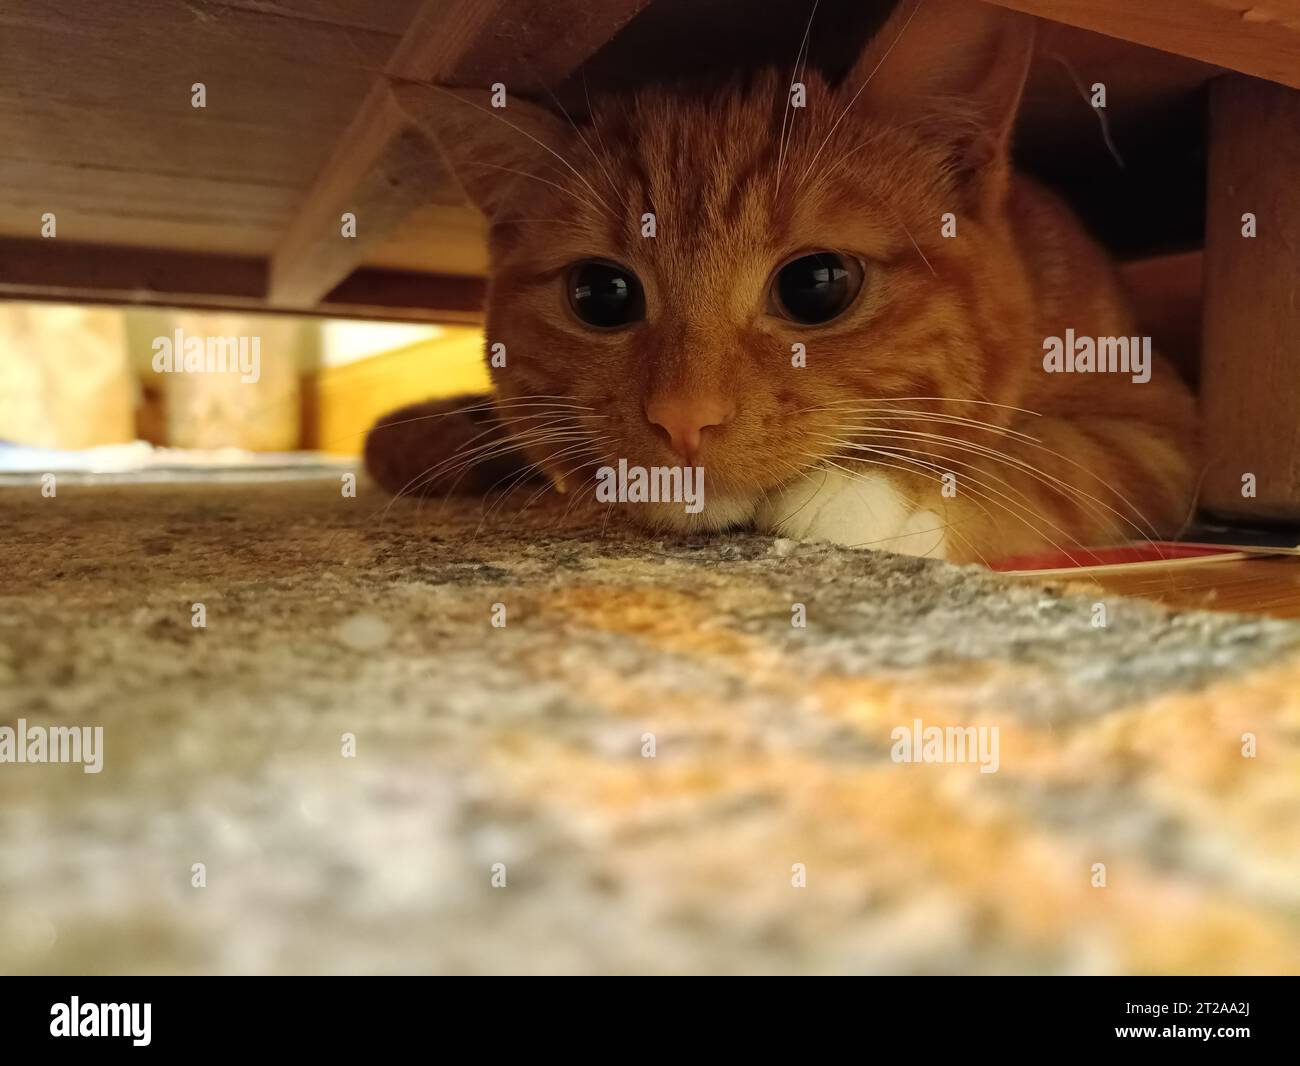 Adorable chaton au gingembre se cachant sous une armoire avec espace de copie. Concept de chaton adorable, mignon, timide et caché. Chat effrayé se cachant loin des gens Banque D'Images